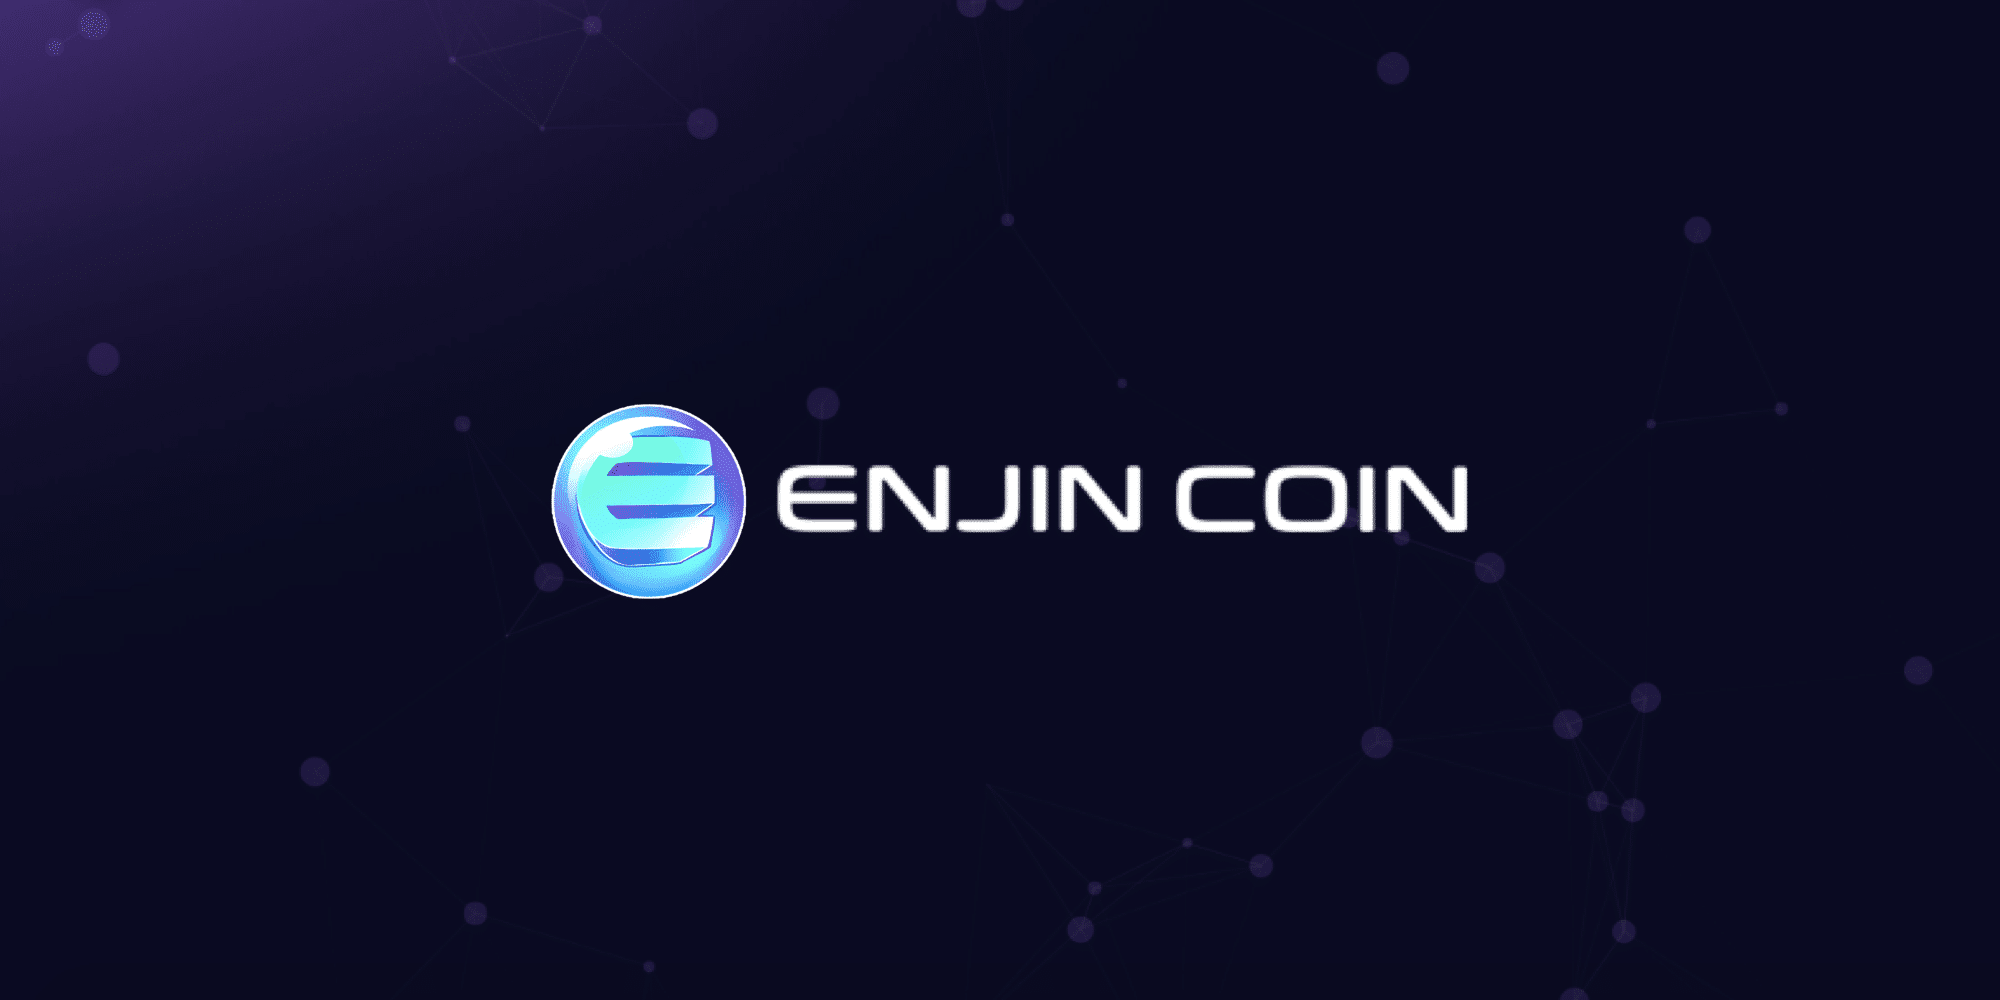 Co je Enjin Coin (ENJ)? | Kompletní průvodce herním kryptoměnou